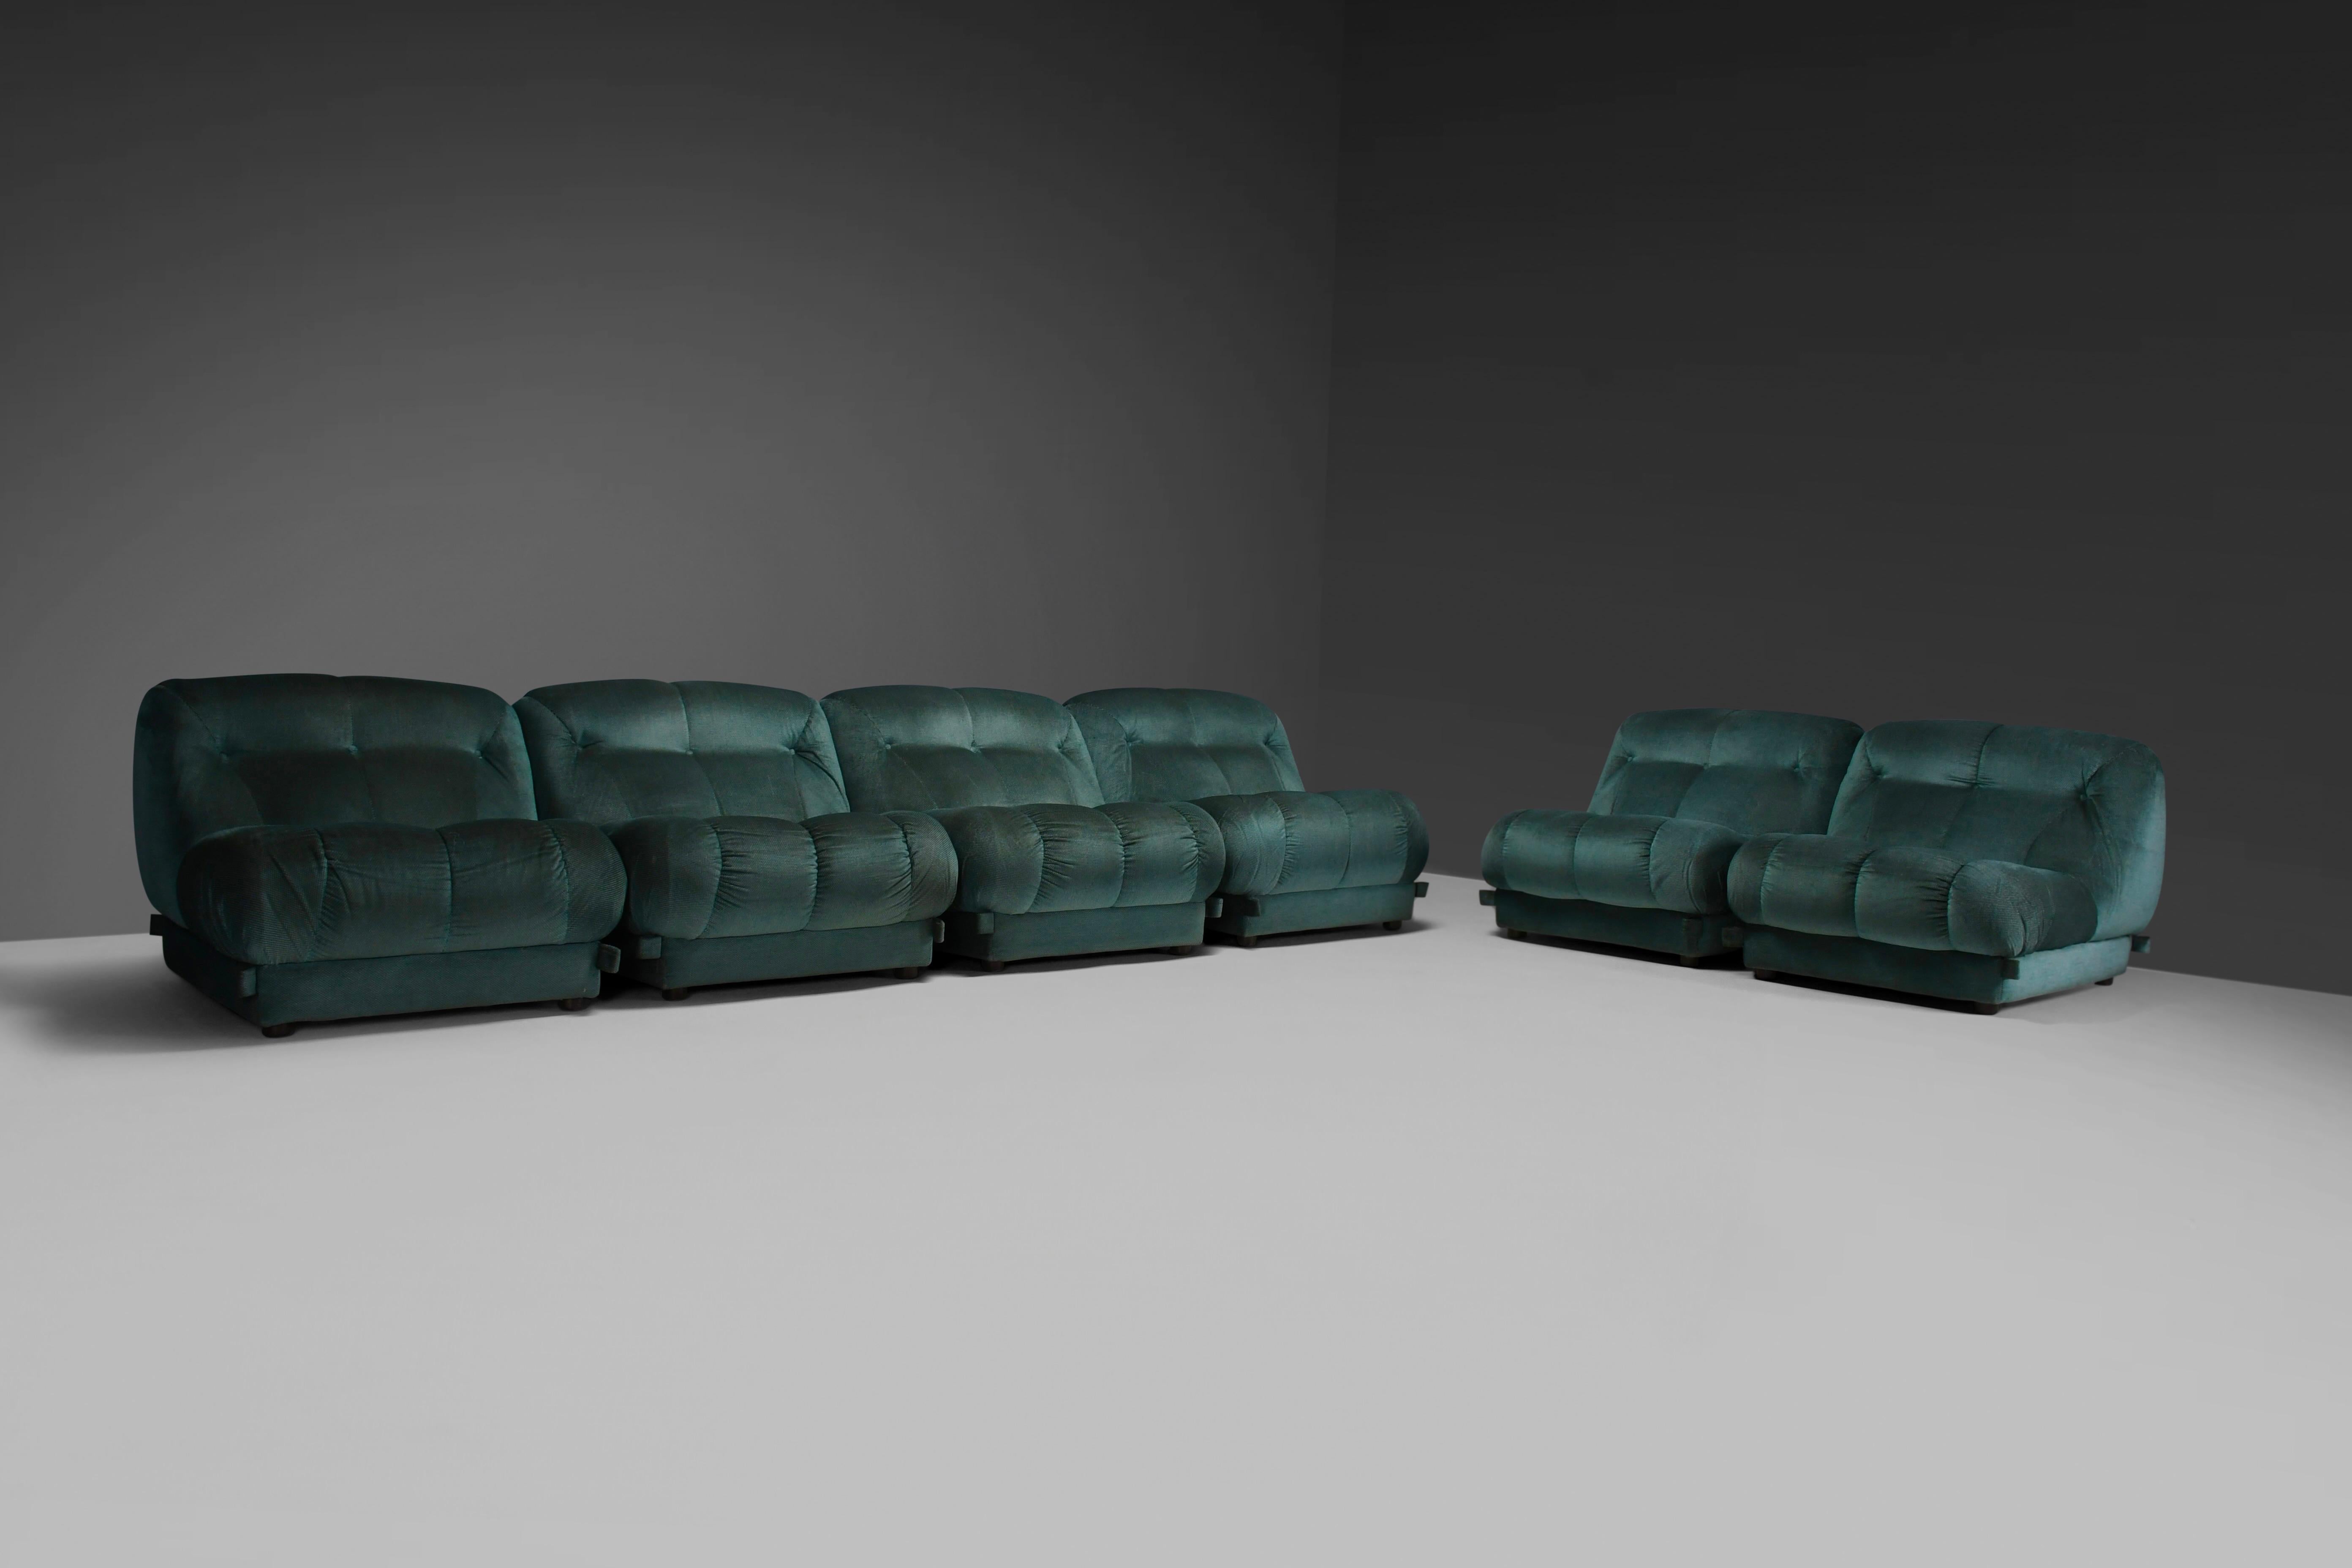 Schönes Modular 'Nuvolone' Sofa in sehr gutem Originalzustand.

Entworfen von Rino Maturi in den 1970er Jahren.

Hergestellt von Mimo Padova, Italien.

Das modulare Sofa 'Nuvolone' ist eine Verschmelzung von Space-Age-Design und unvergleichlichem